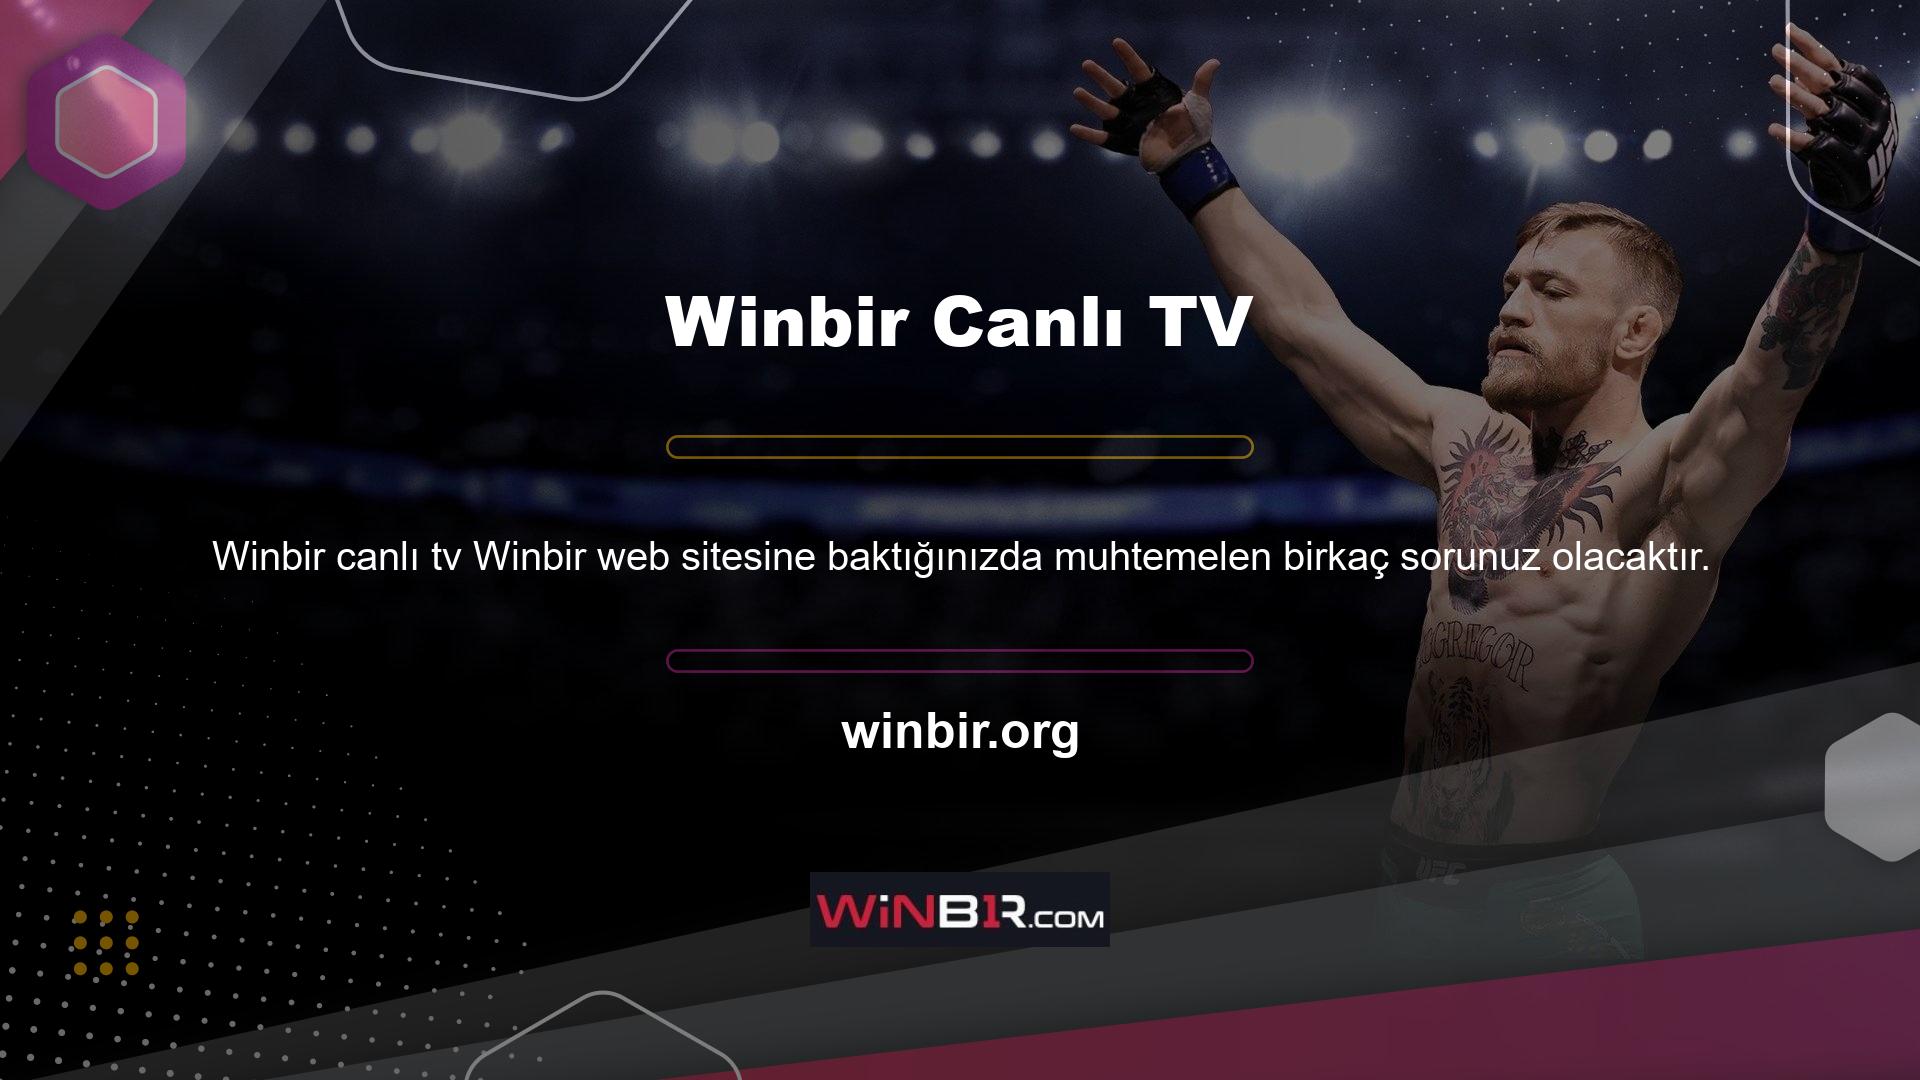 Canlı TV'ye bağlanma yöntemi de Winbir web sitesinde tanımlanmıştır